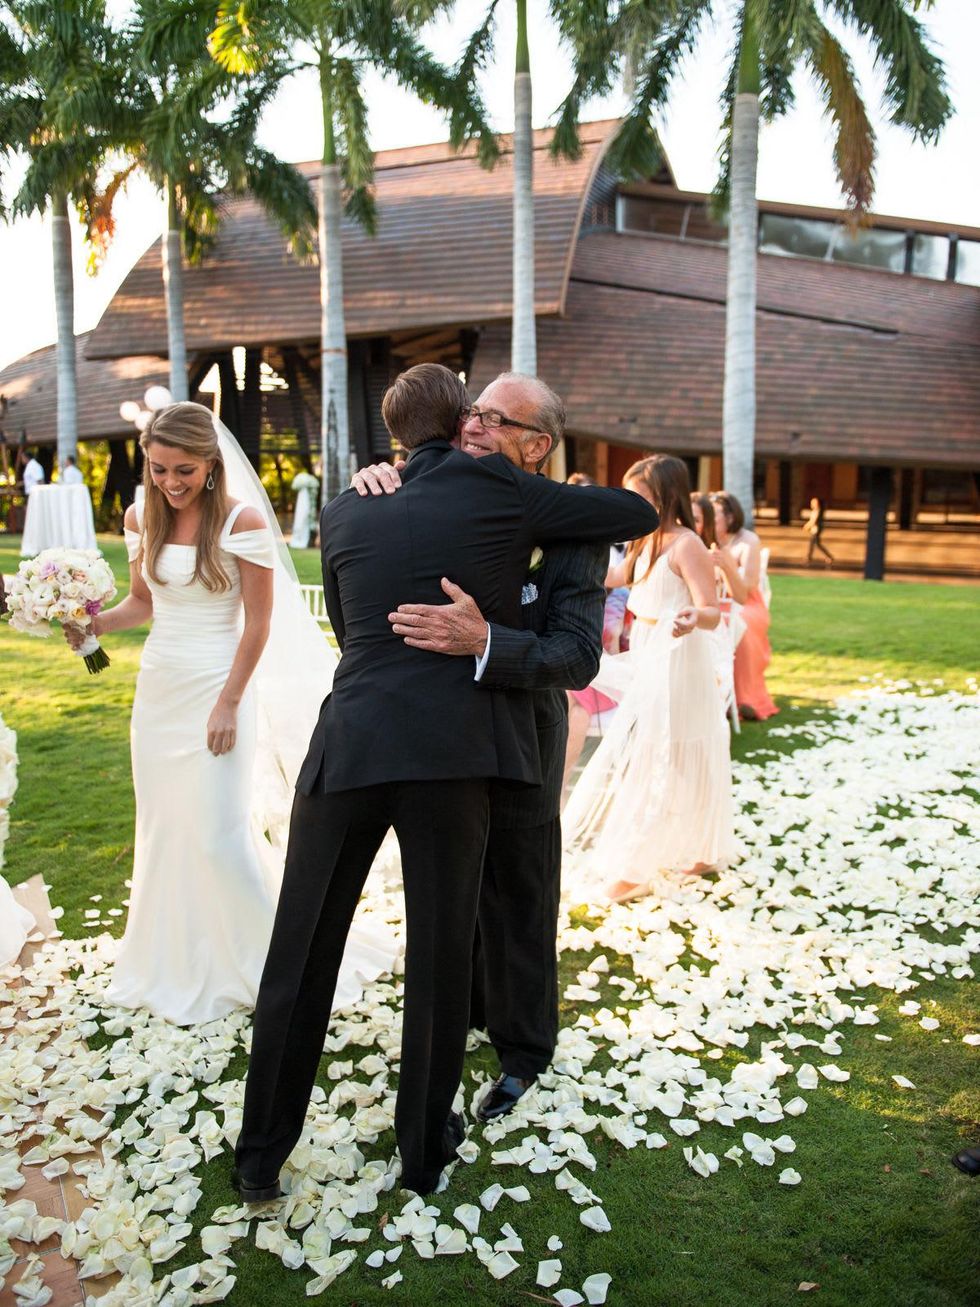 44, Wonderful Weddings, Brittany Sakowitz and Kevin Kushner, February 2013